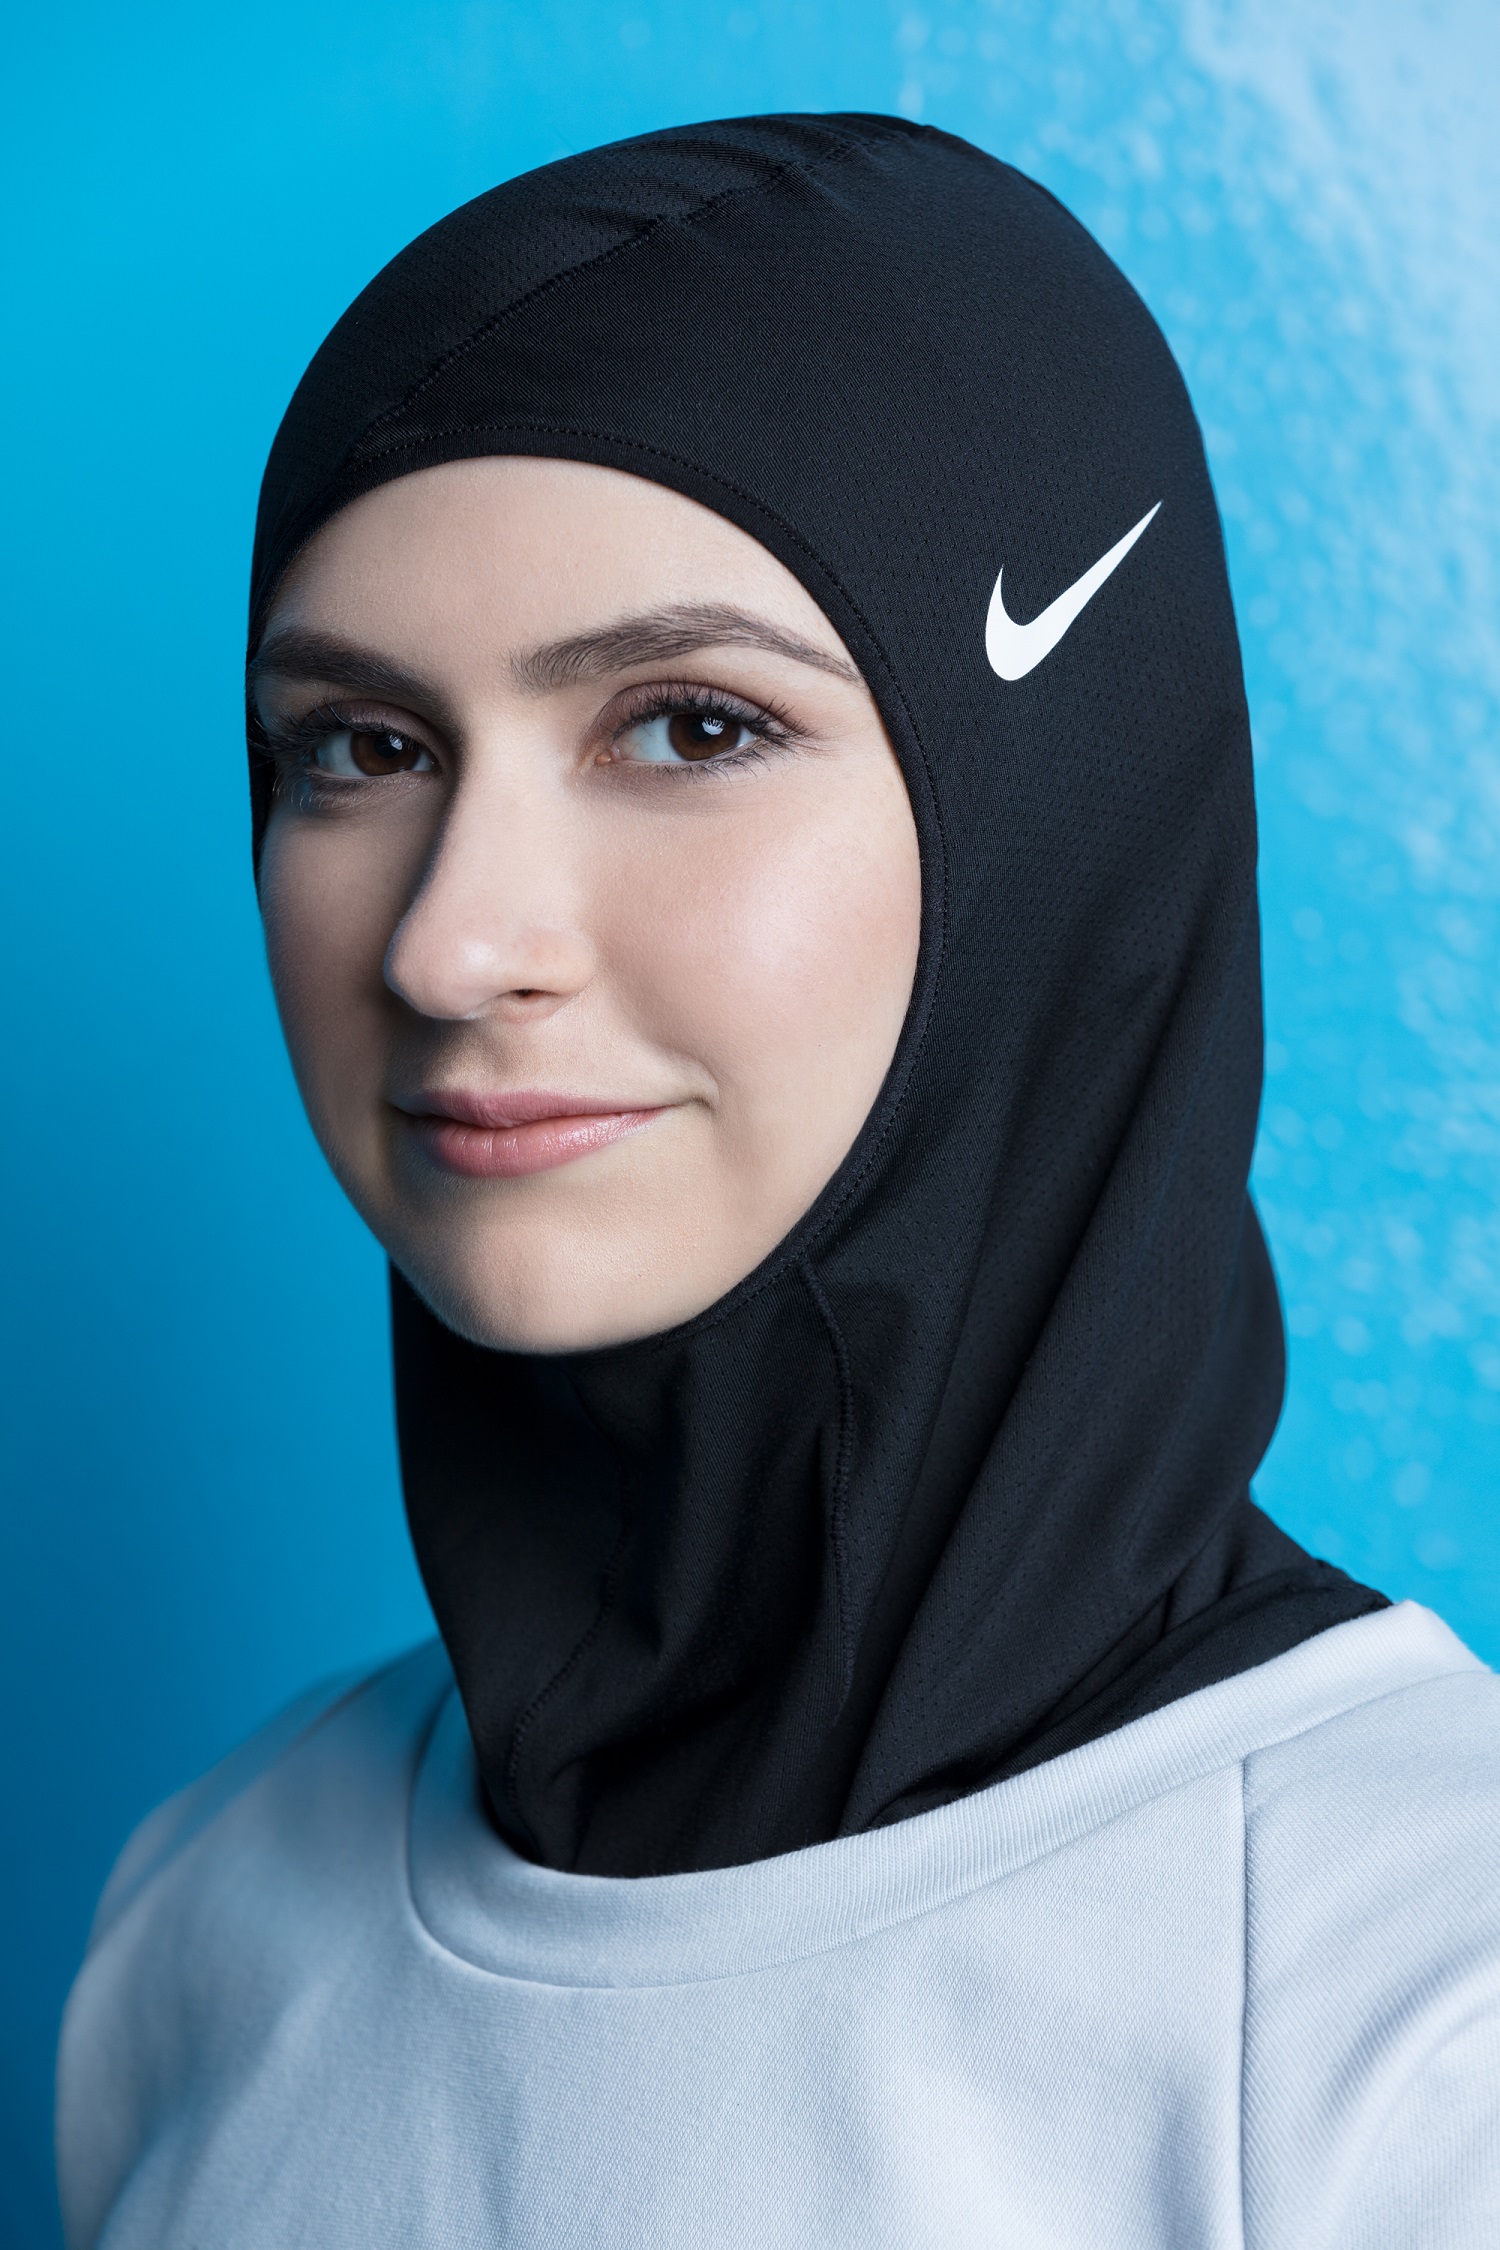 2014 6 حجابات 2019 - اجمل كوليكشن حجاب لهذا العام شوق الرياض